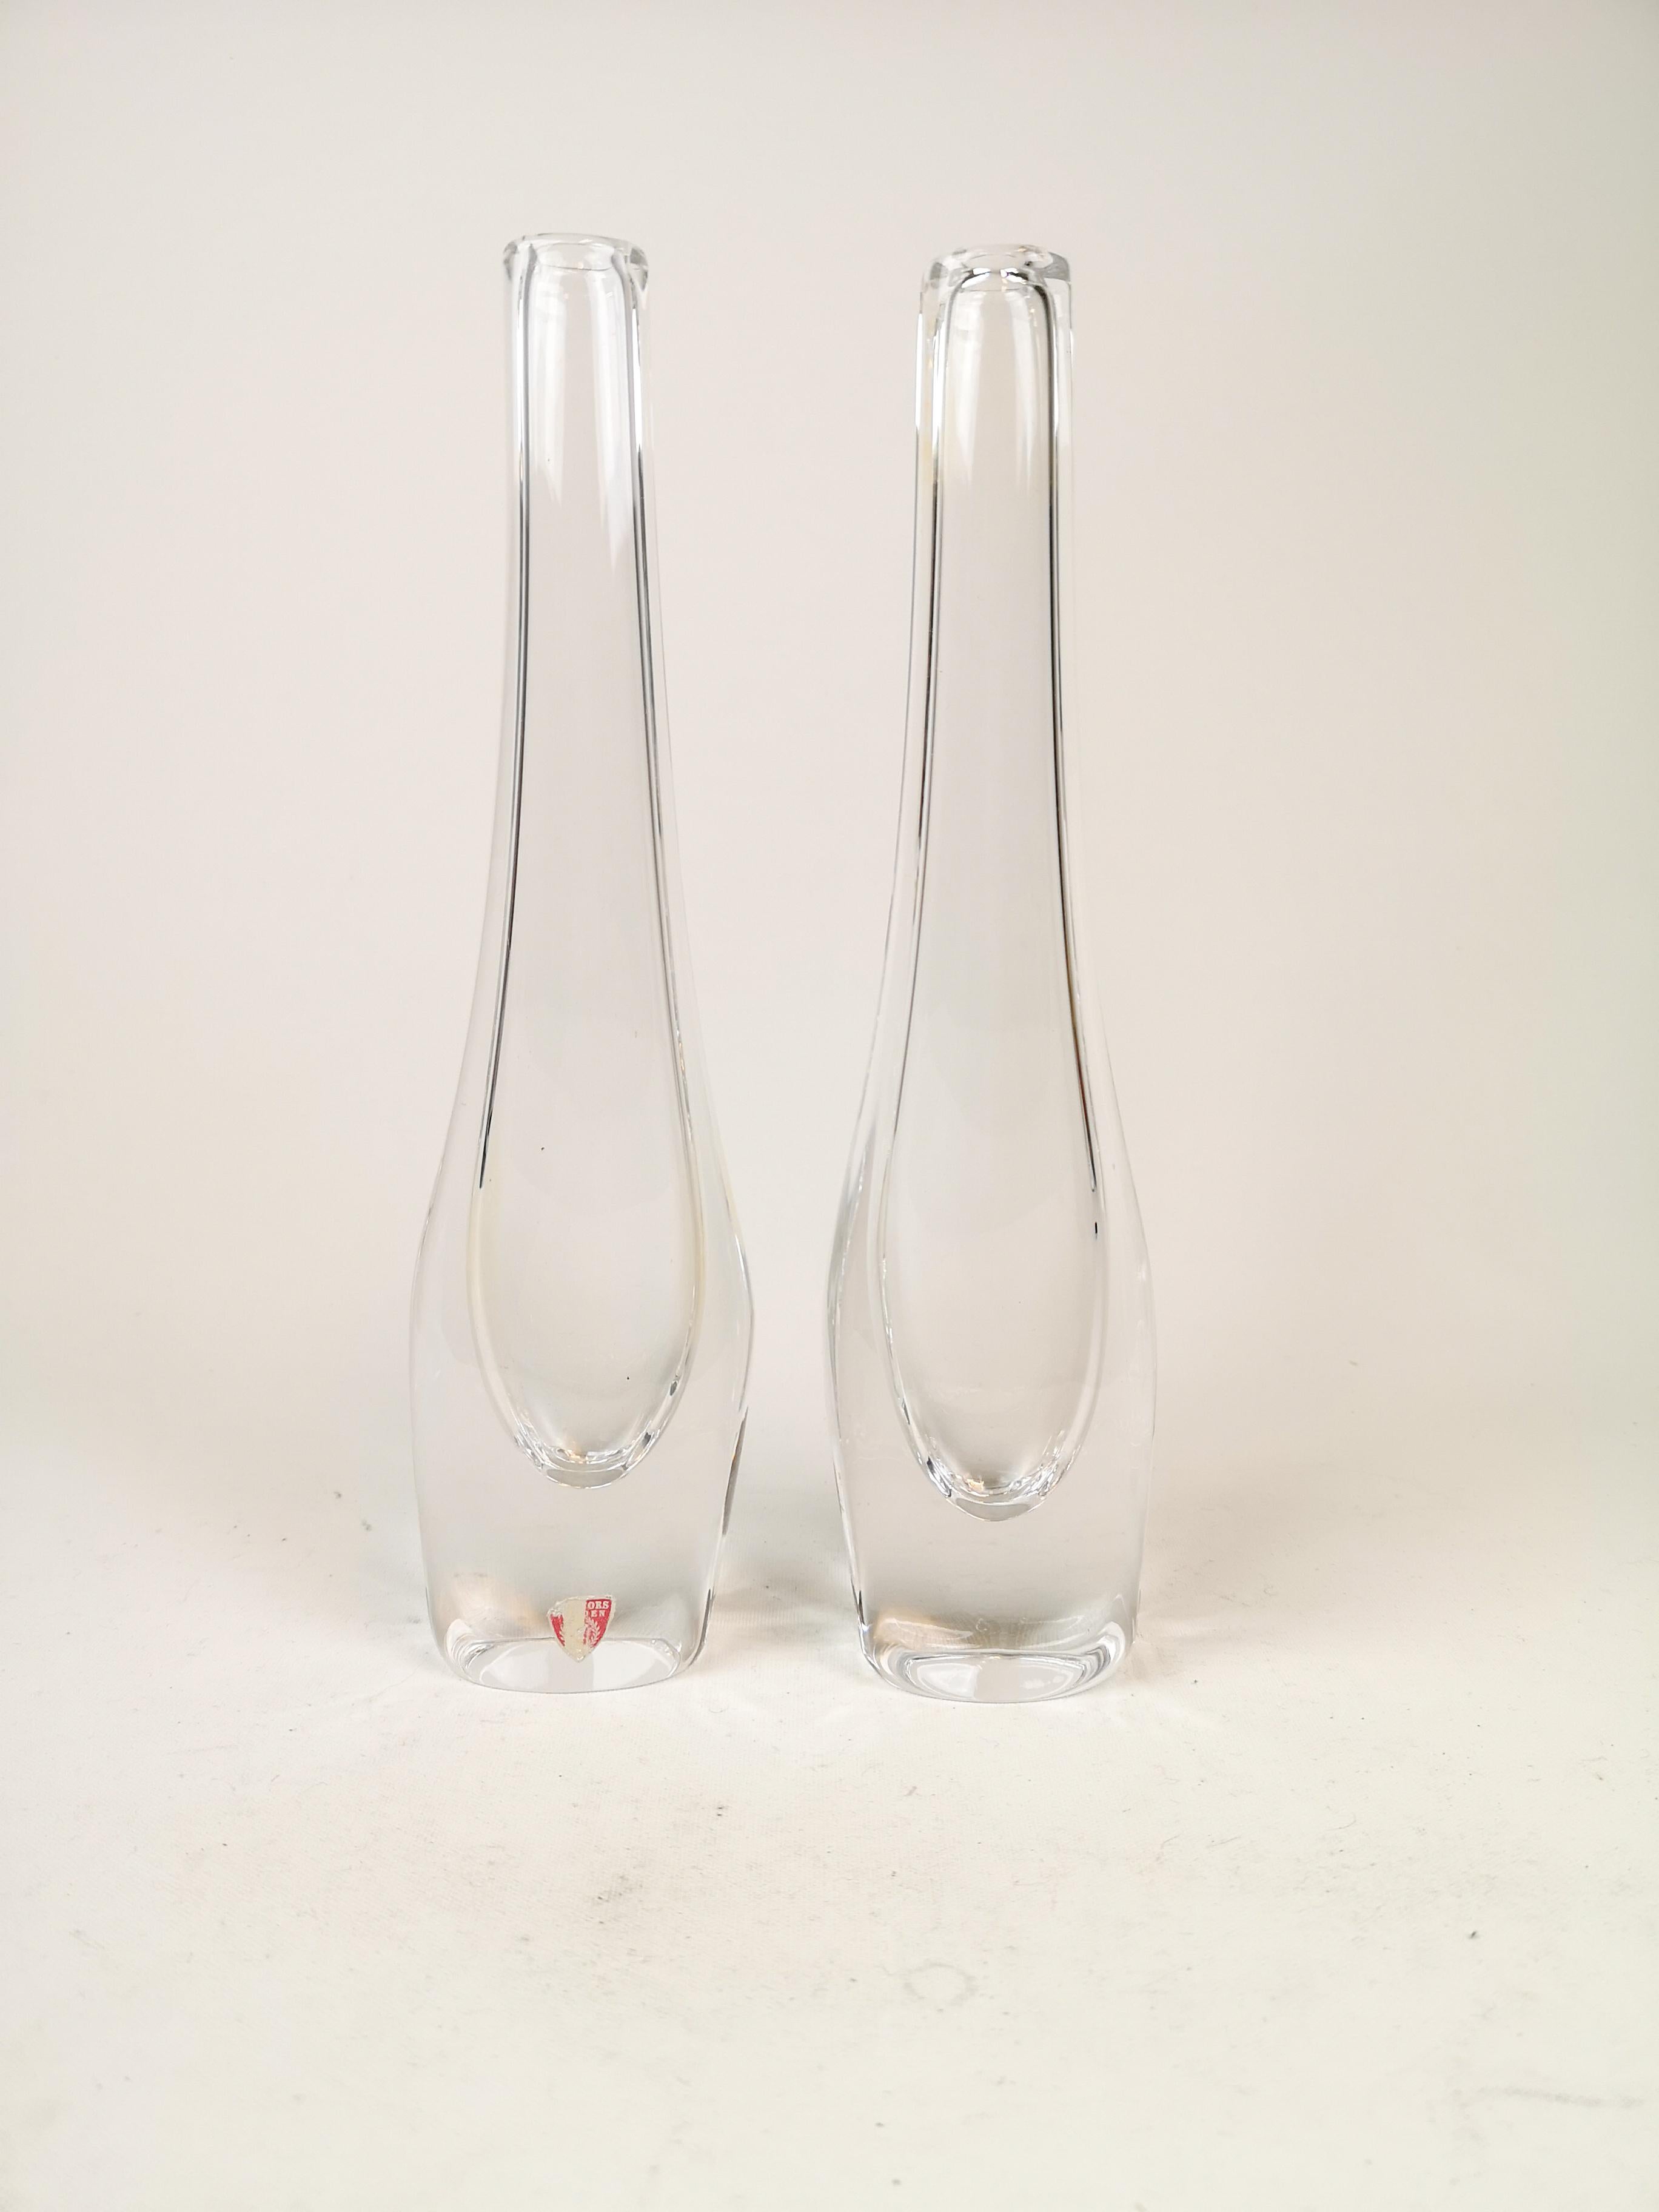 Ces deux pièces ont été produites en Suède chez Orrefors et conçues par Nils Landberg au début des années 1950 
Merveilleux cristal de verre clair avec une forme exceptionnelle.

Bon état

Mesures : H 26 cm, P 3,5, L 7 cm.
 